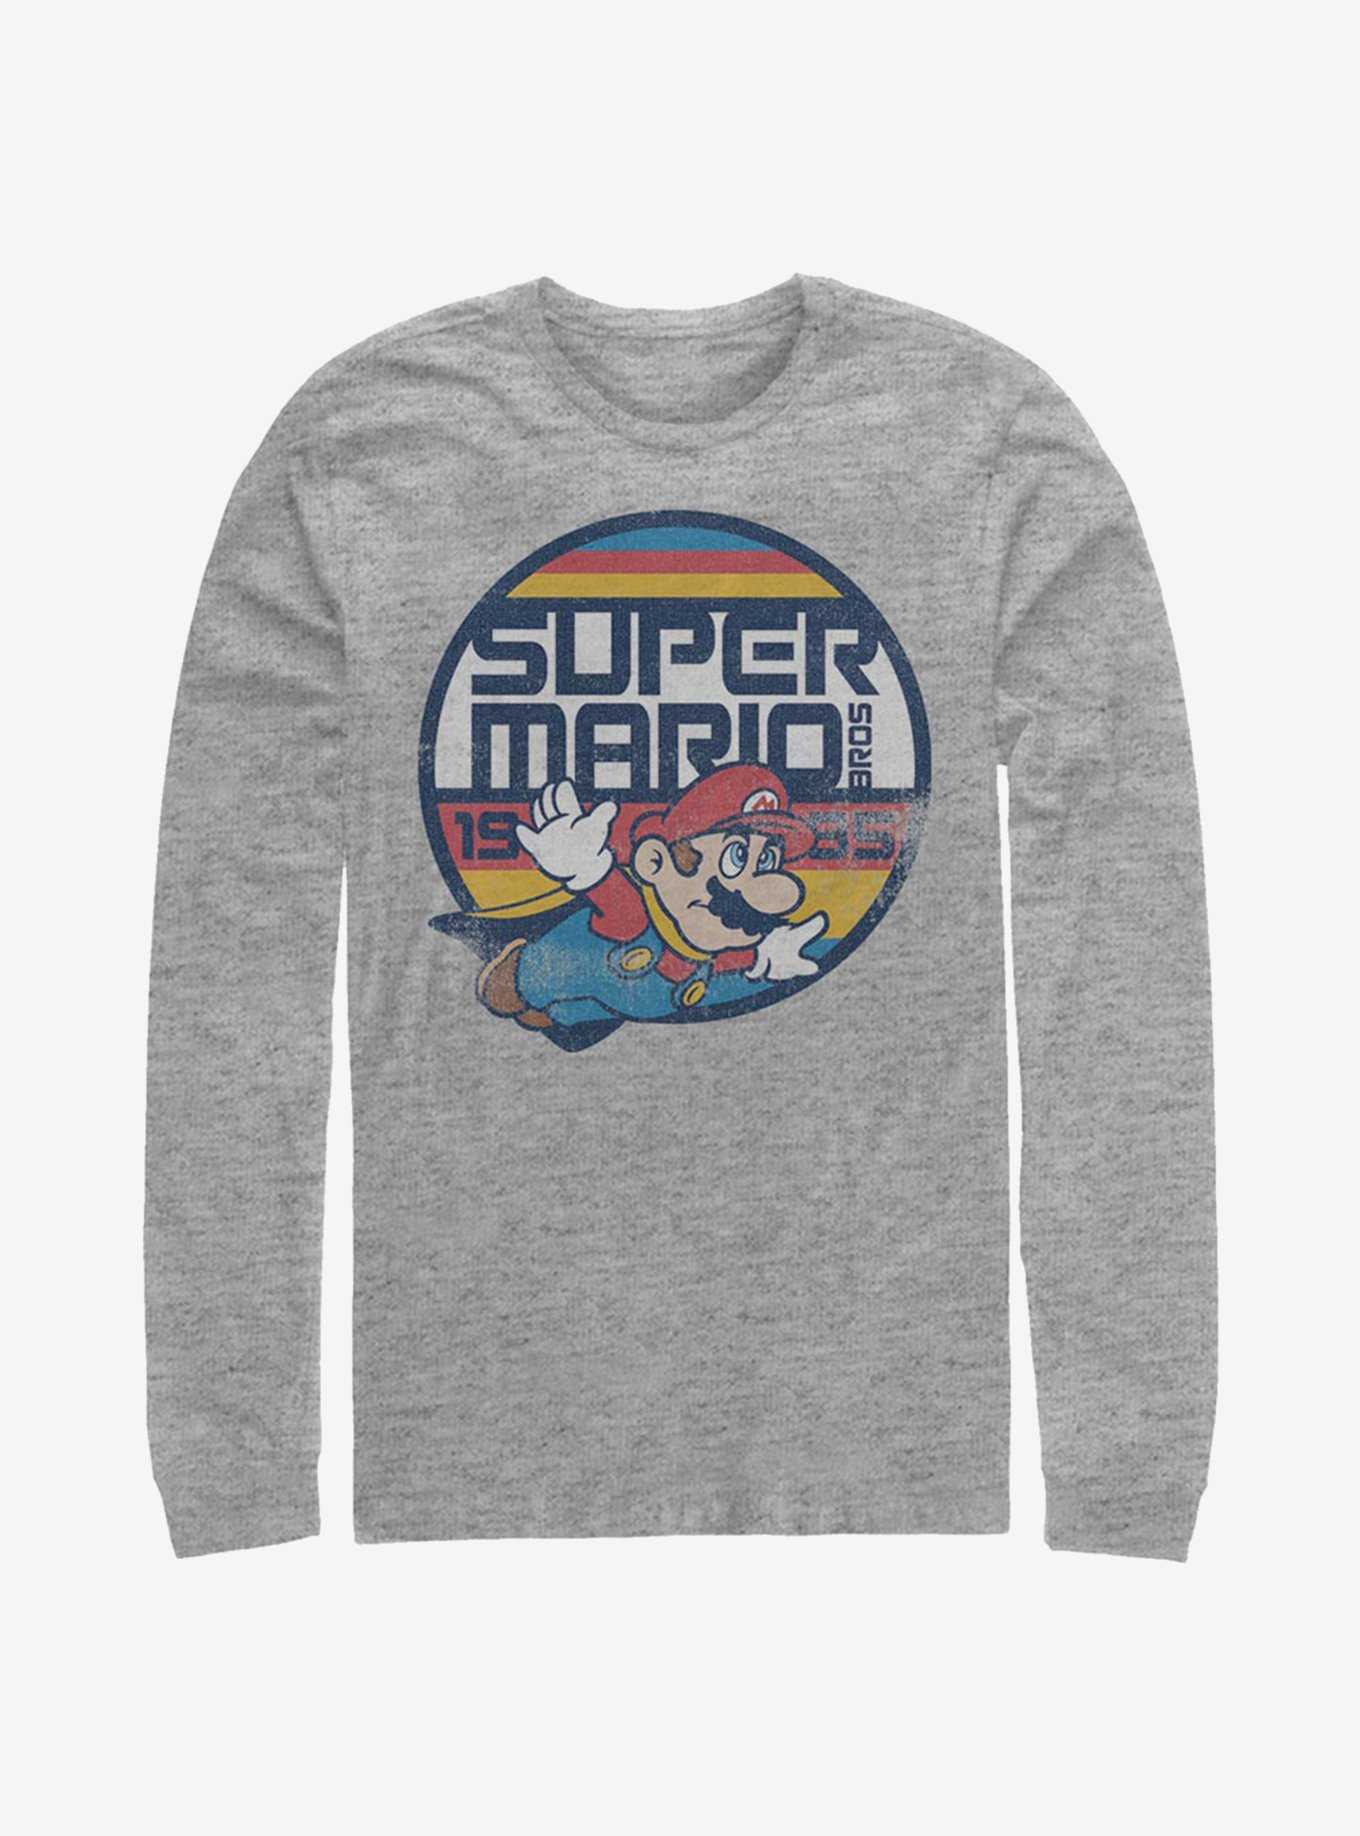 Super Mario Super Flyer Long-Sleeve T-Shirt, , hi-res